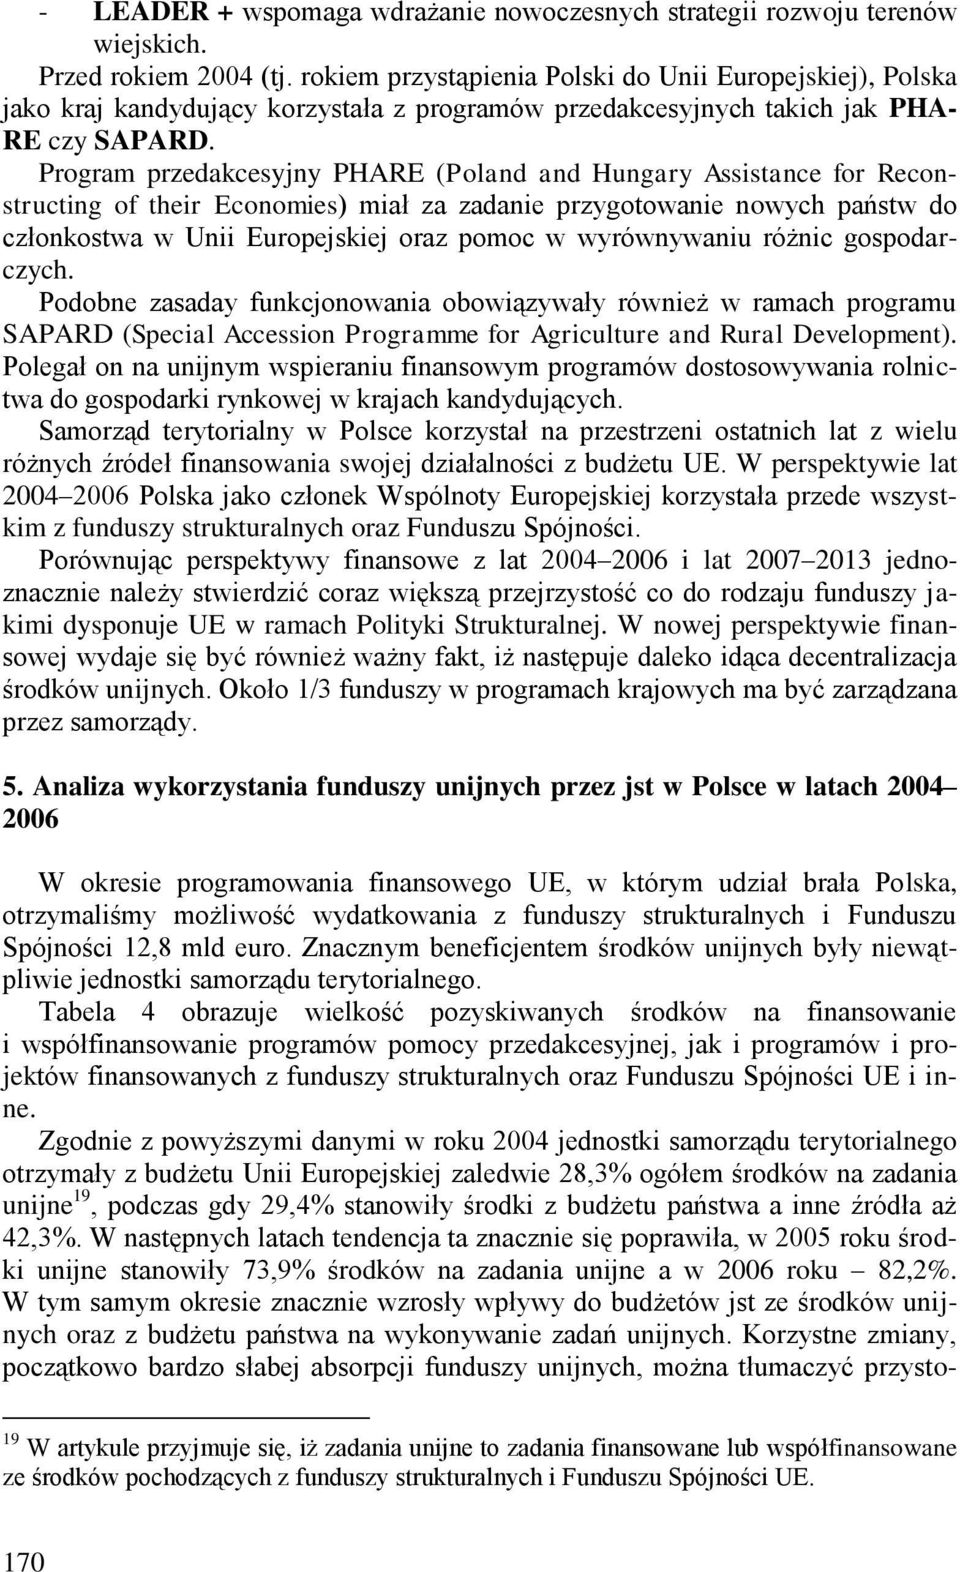 Program przedakcesyjny PHARE (Poland and Hungary Assistance for Reconstructing of their Economies) miał za zadanie przygotowanie nowych państw do członkostwa w Unii Europejskiej oraz pomoc w